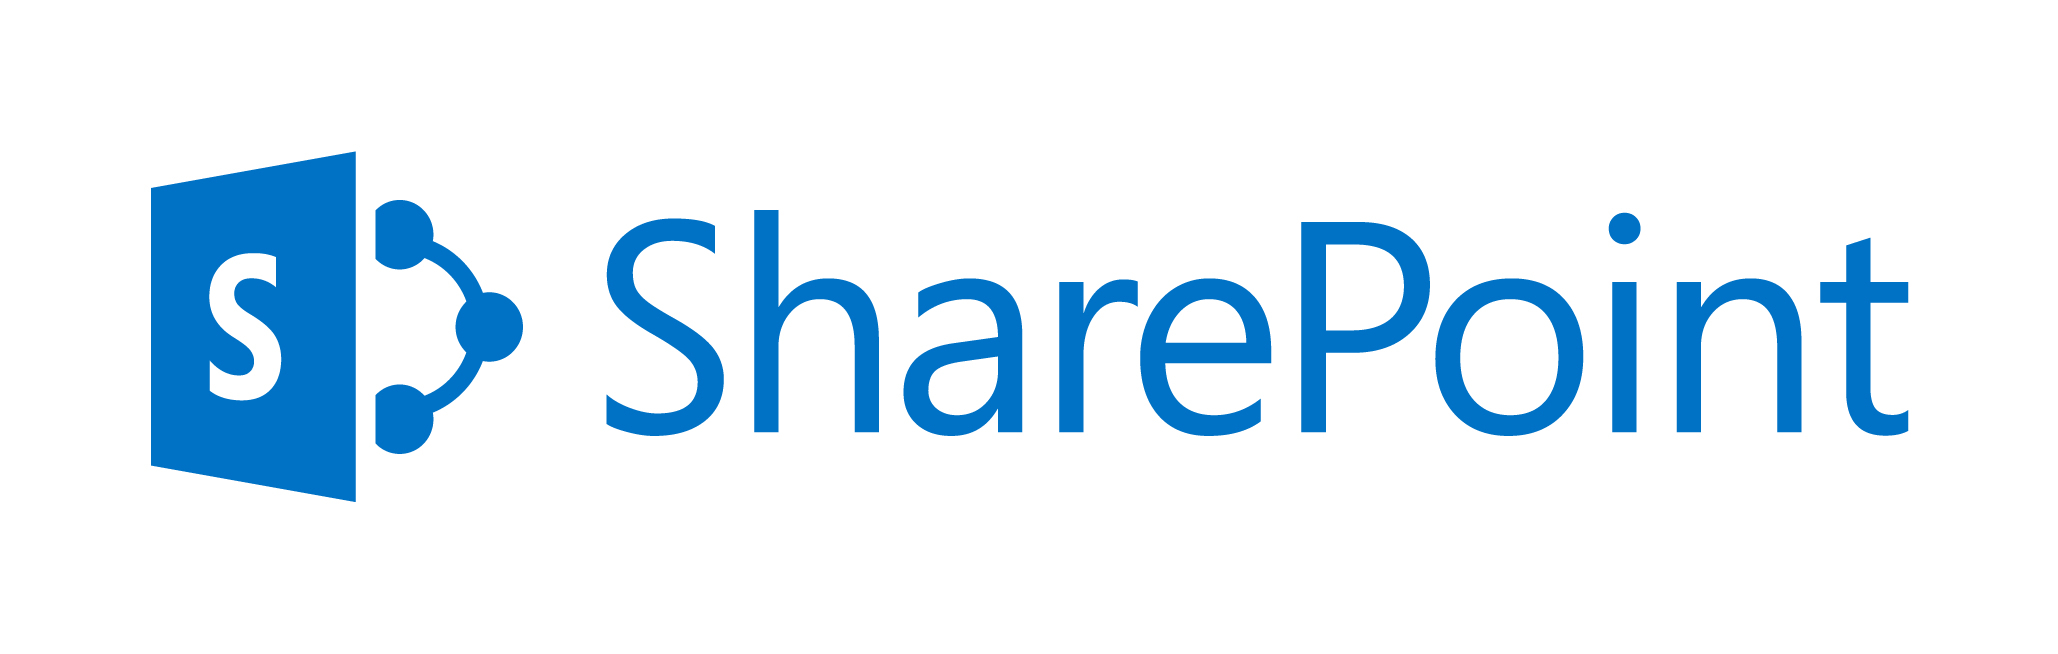 Microsoft SharePoint Server Standard CAL - Lizenz & Softwareversicherung